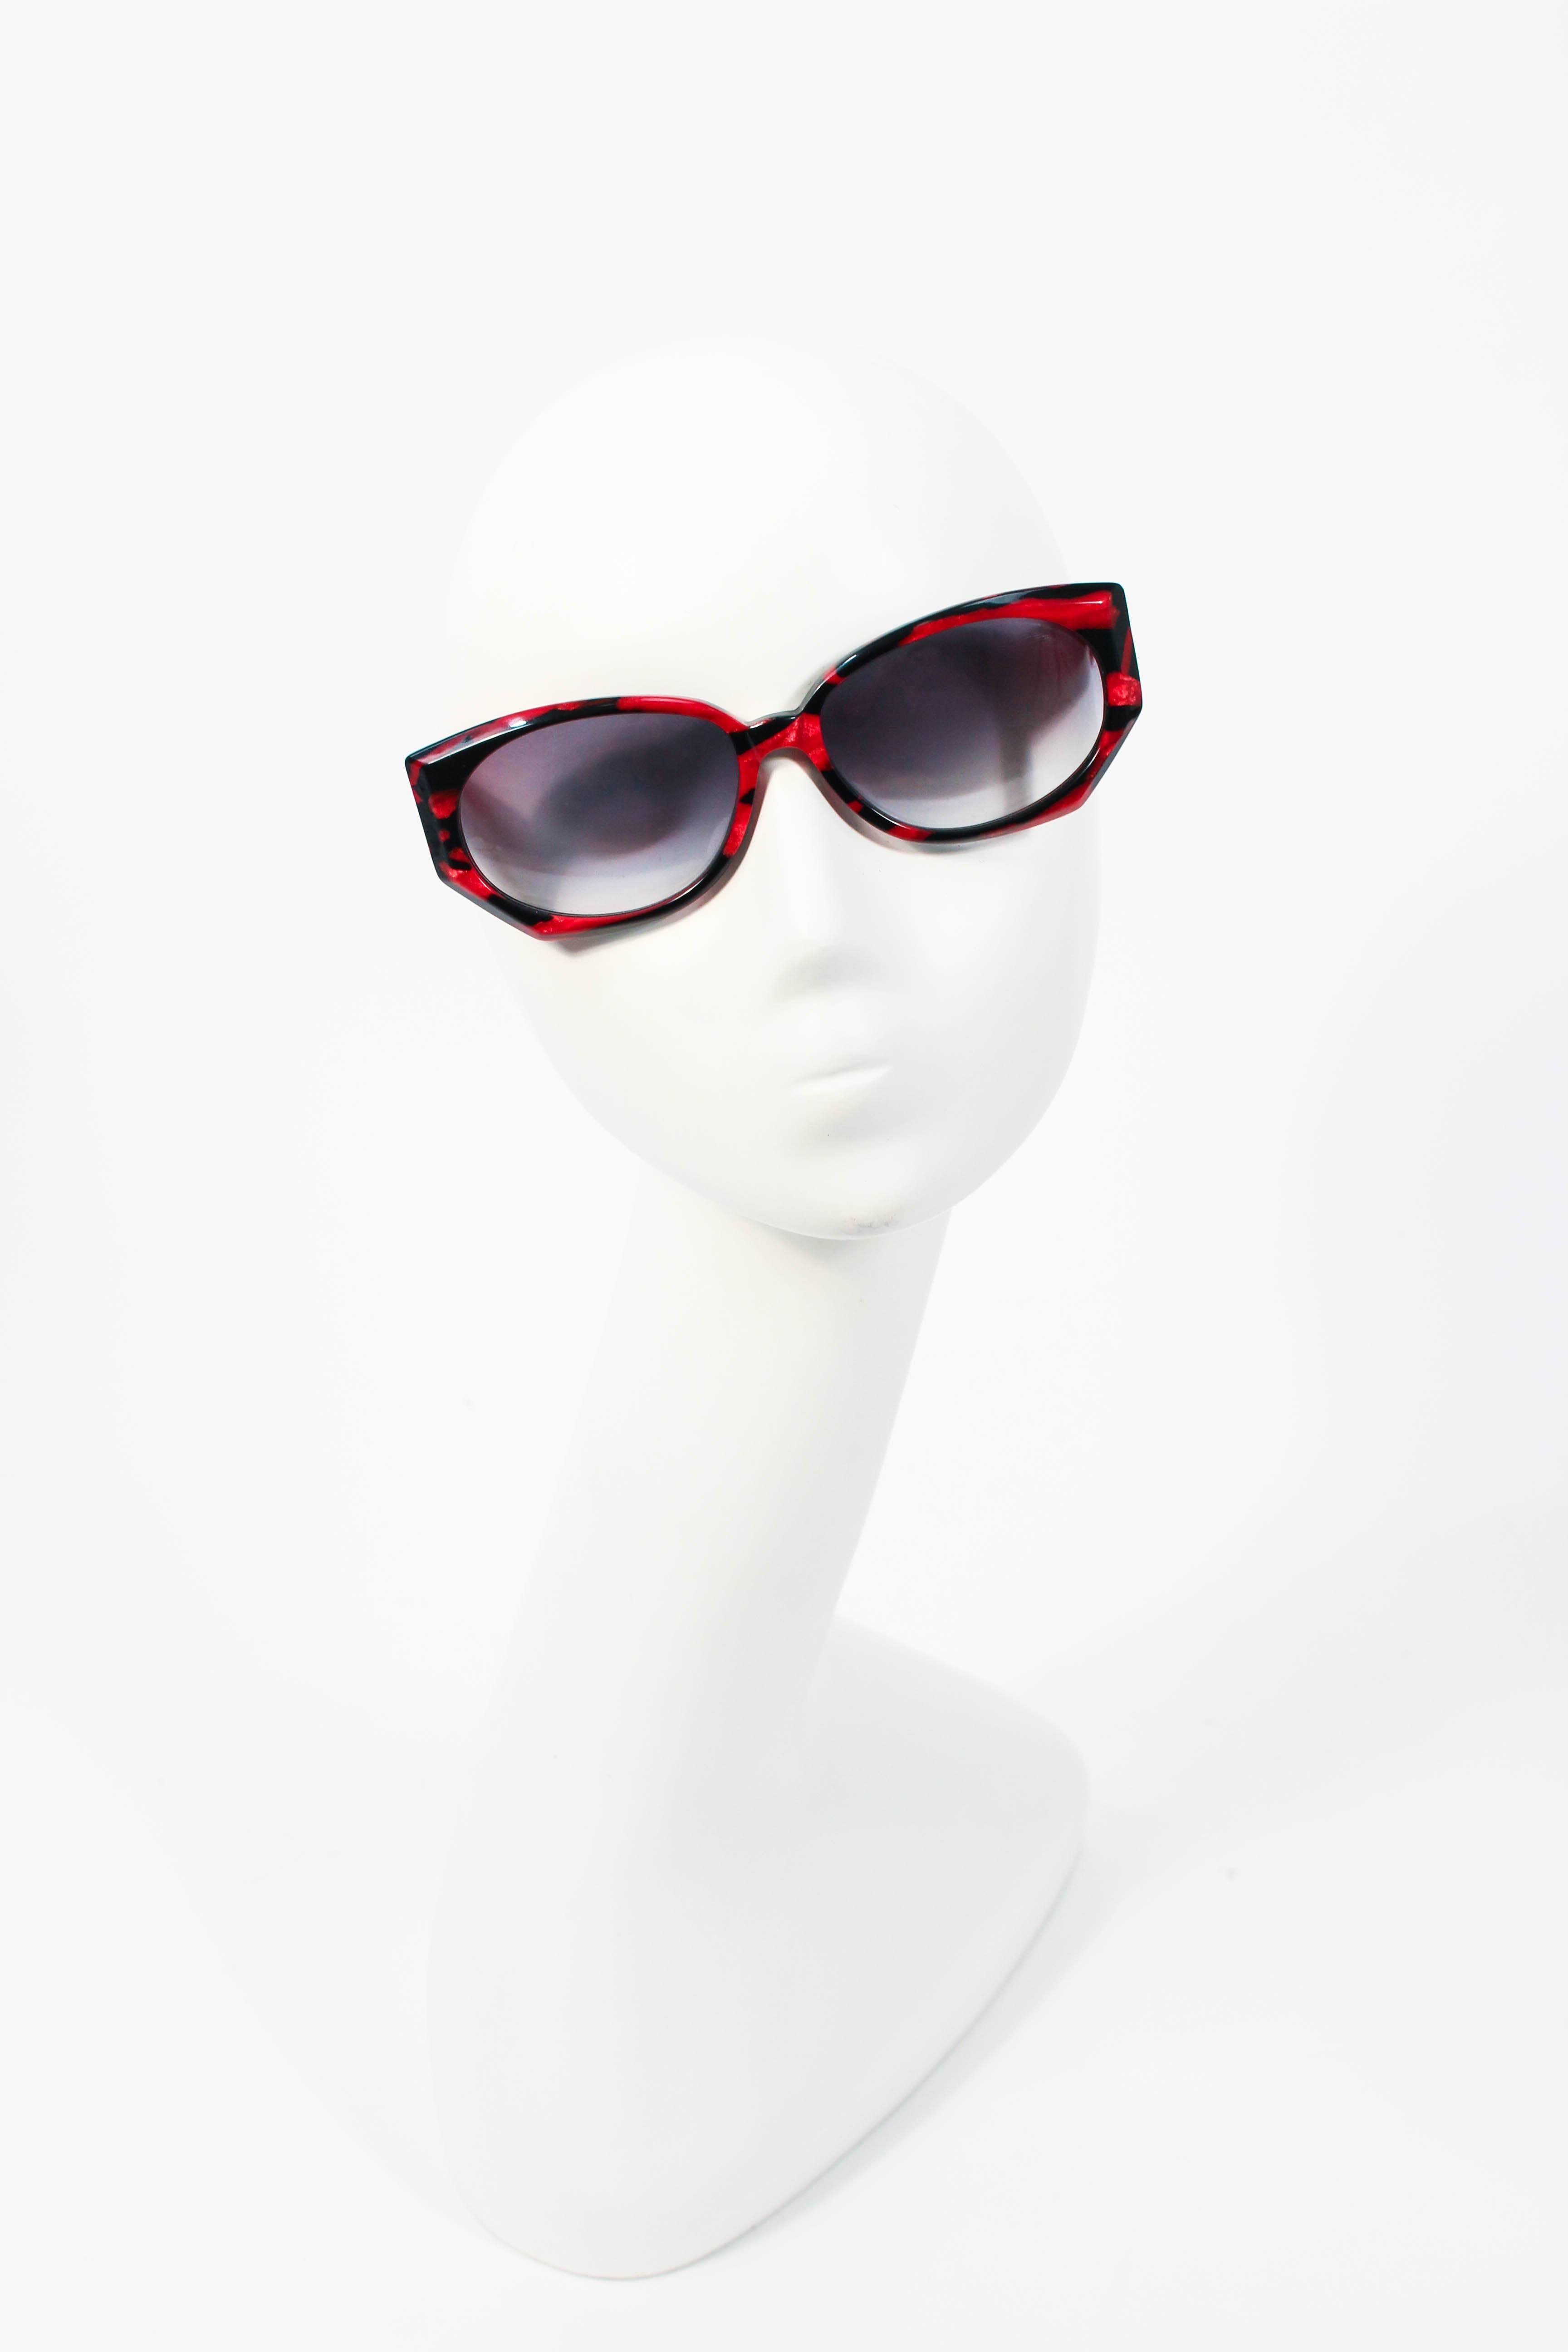 Ces lunettes de soleil Krizia sont composées d'un plastique marbré noir et rouge. Elle est dotée d'un superbe cadre large et d'un design chic et tendance. En excellent état vintage.

**Veuillez comparer les mesures pour vous assurer de leur